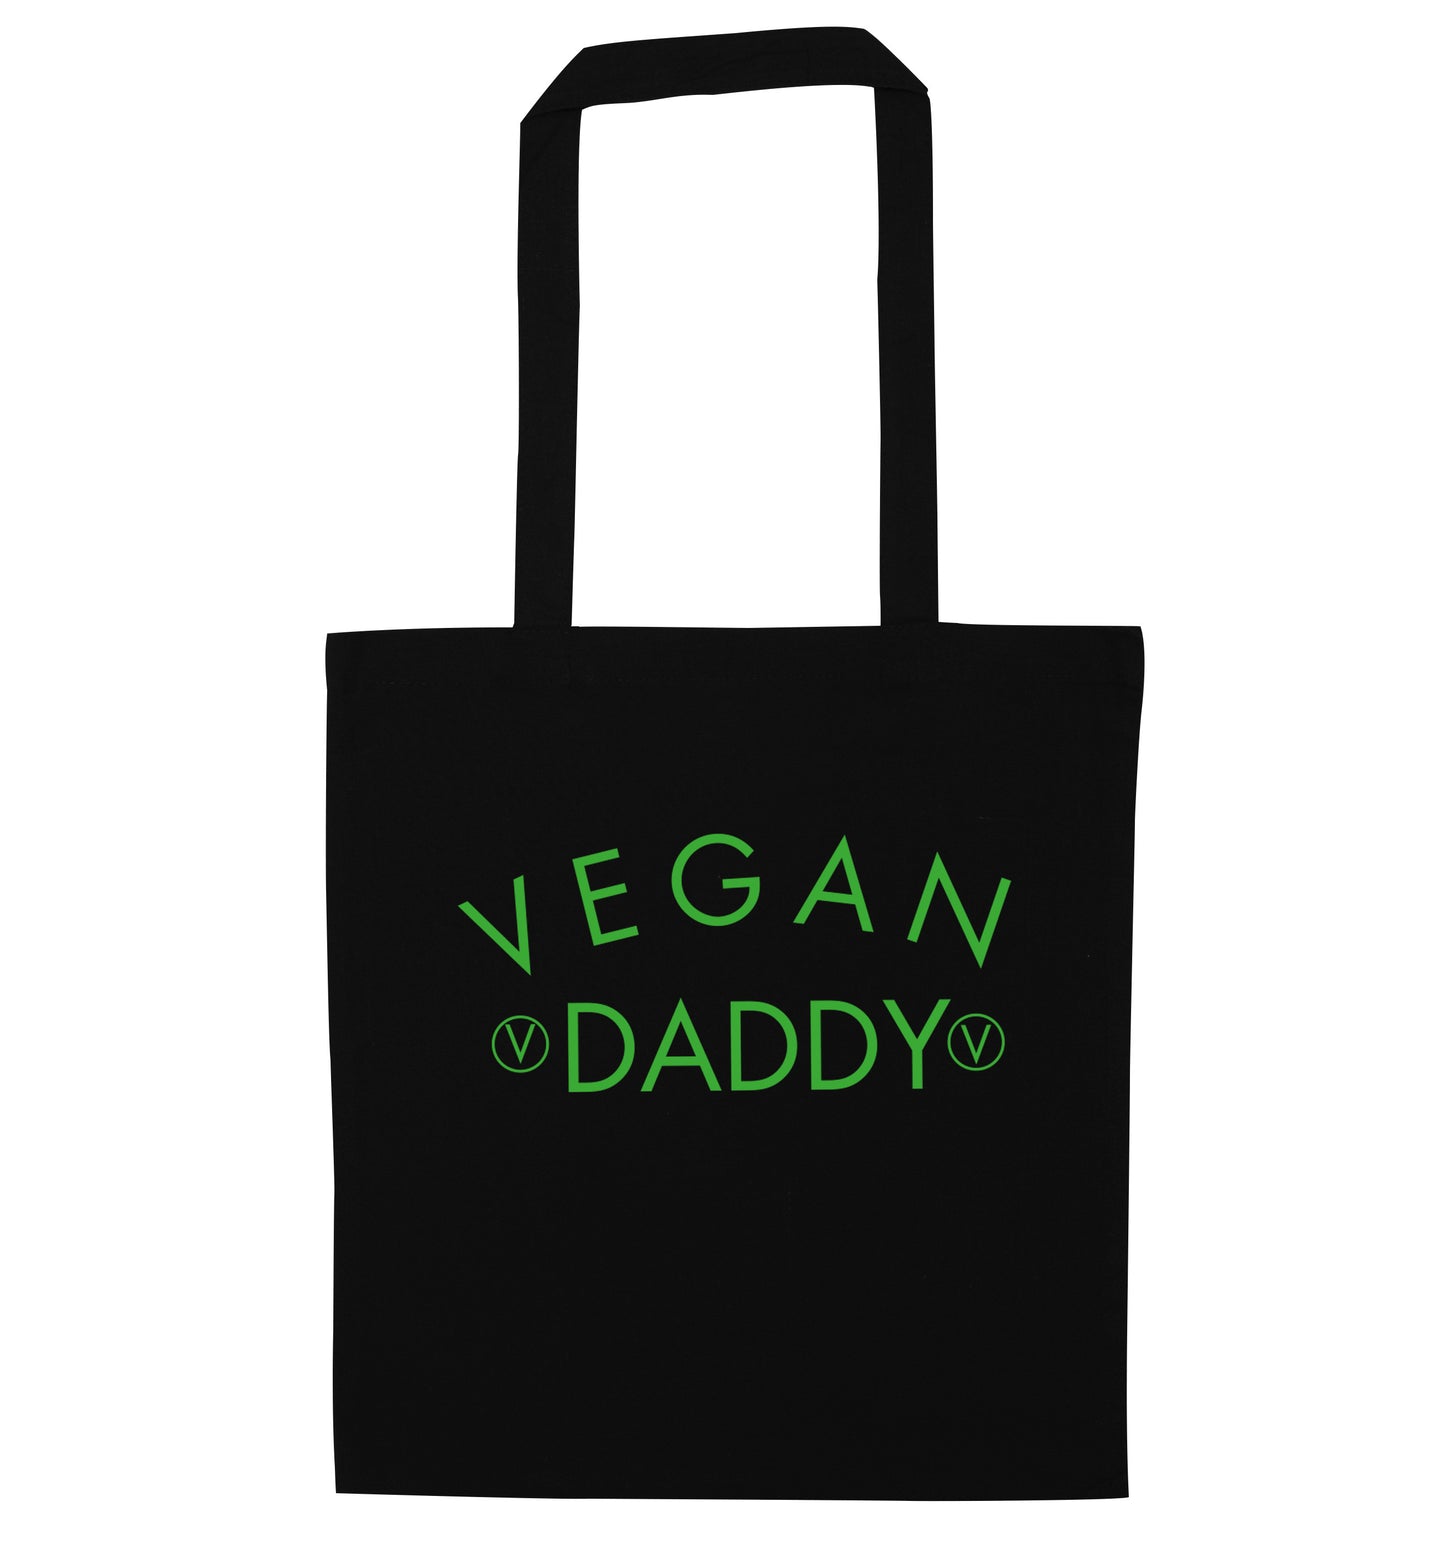 Vegan daddy black tote bag